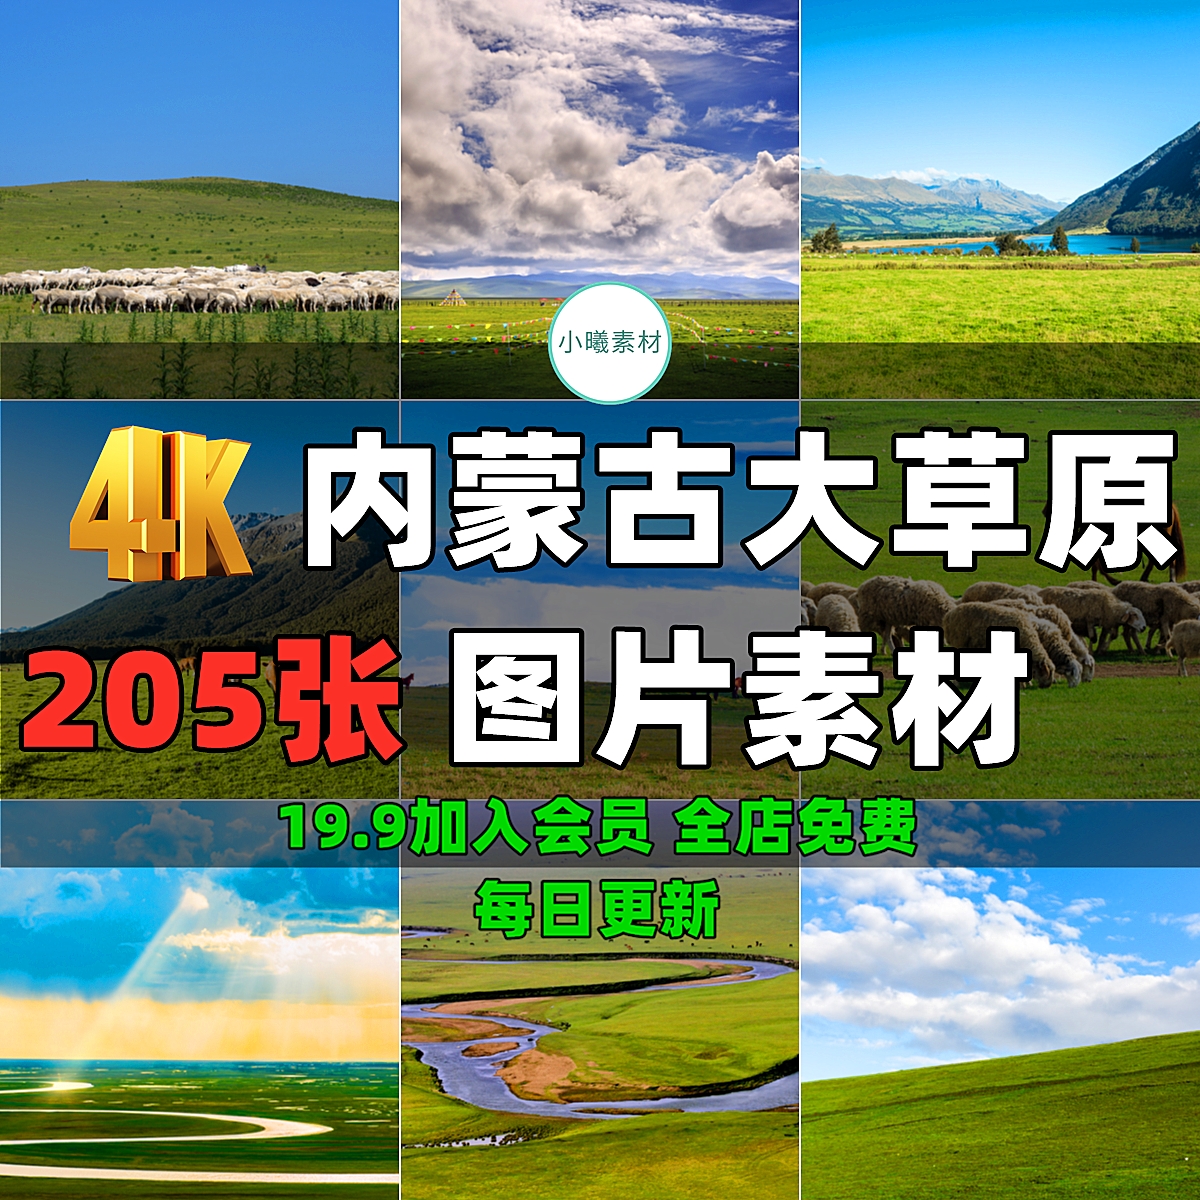 内蒙古大草原背景图片素材绿草地自然风景天空蒙古包牧场牛羊马群